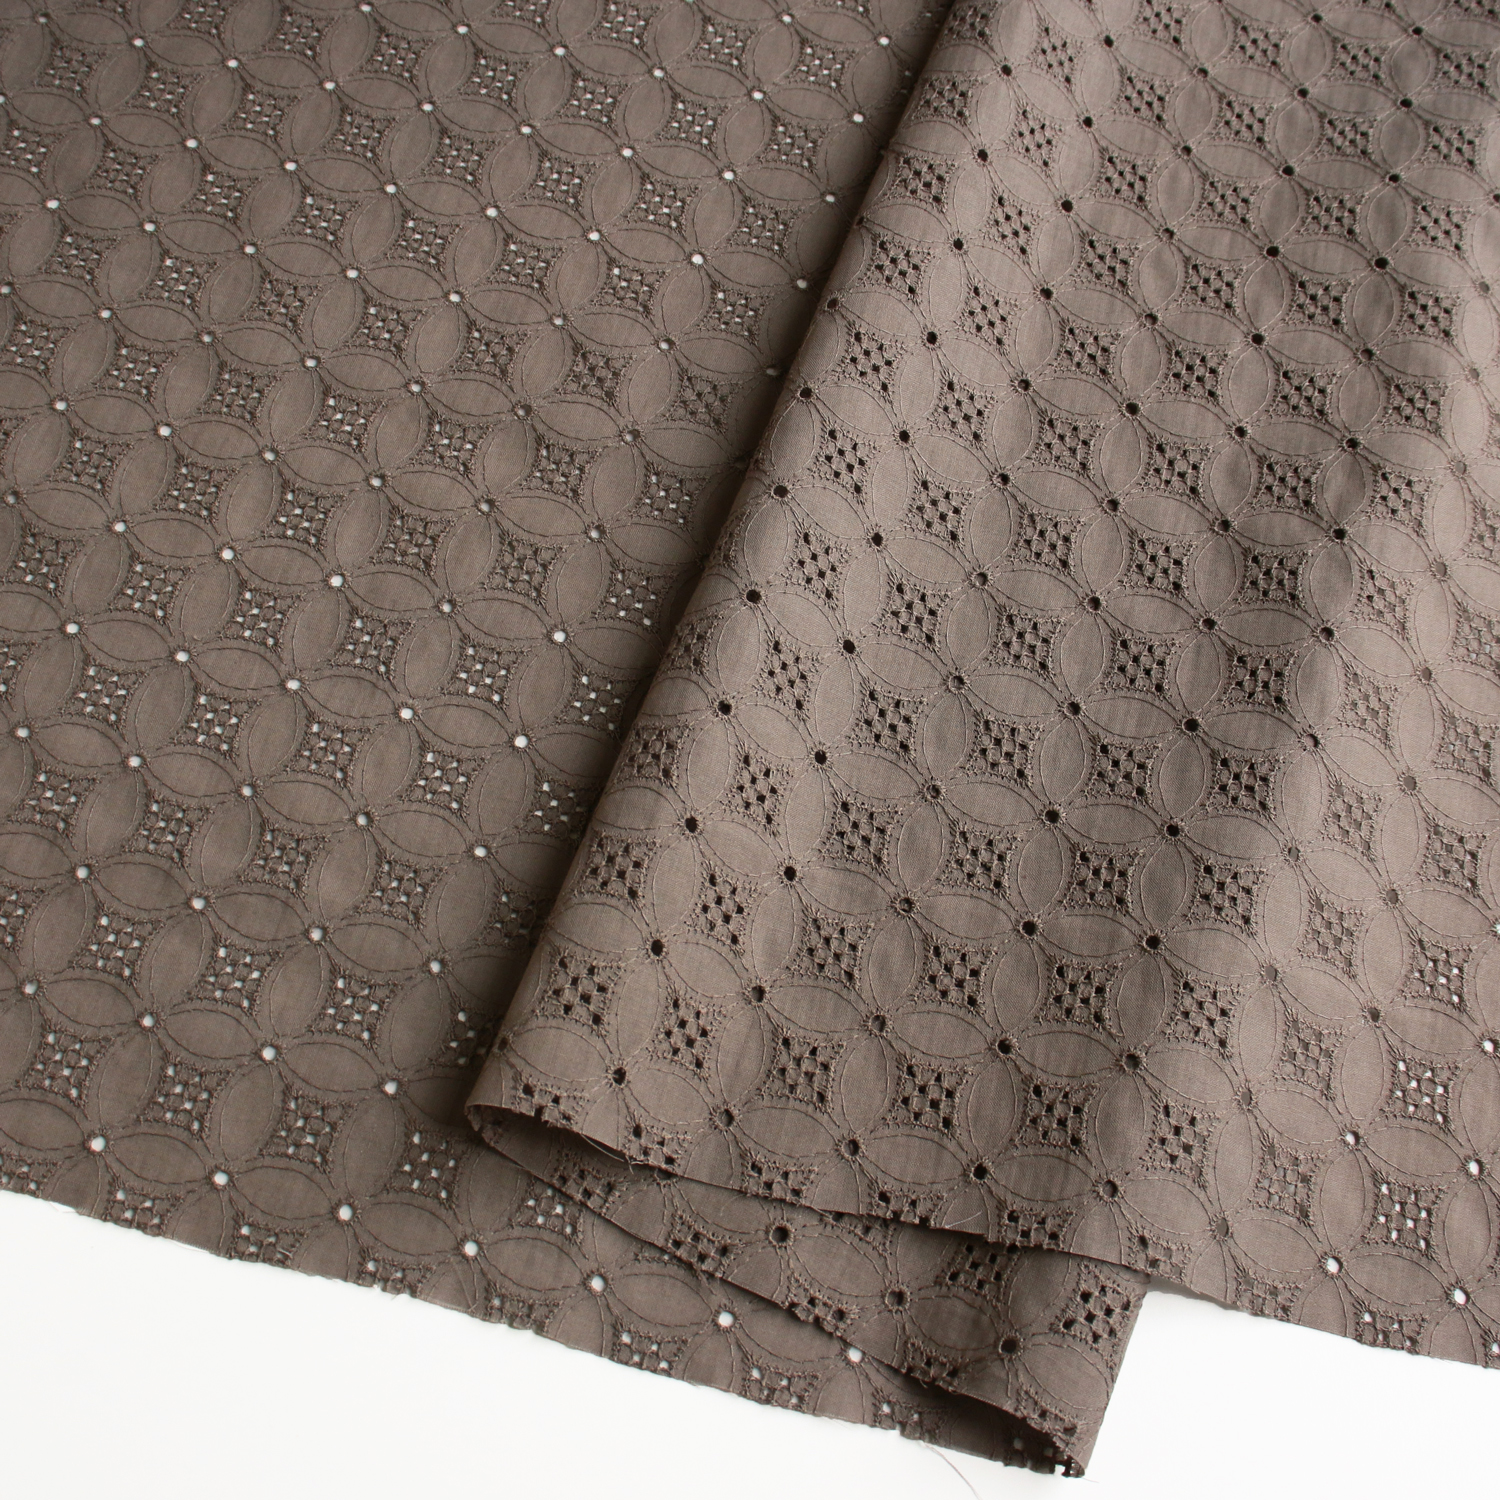 AL692-94 cotton lace fabric, Width 100cm, 1m/unit (m)